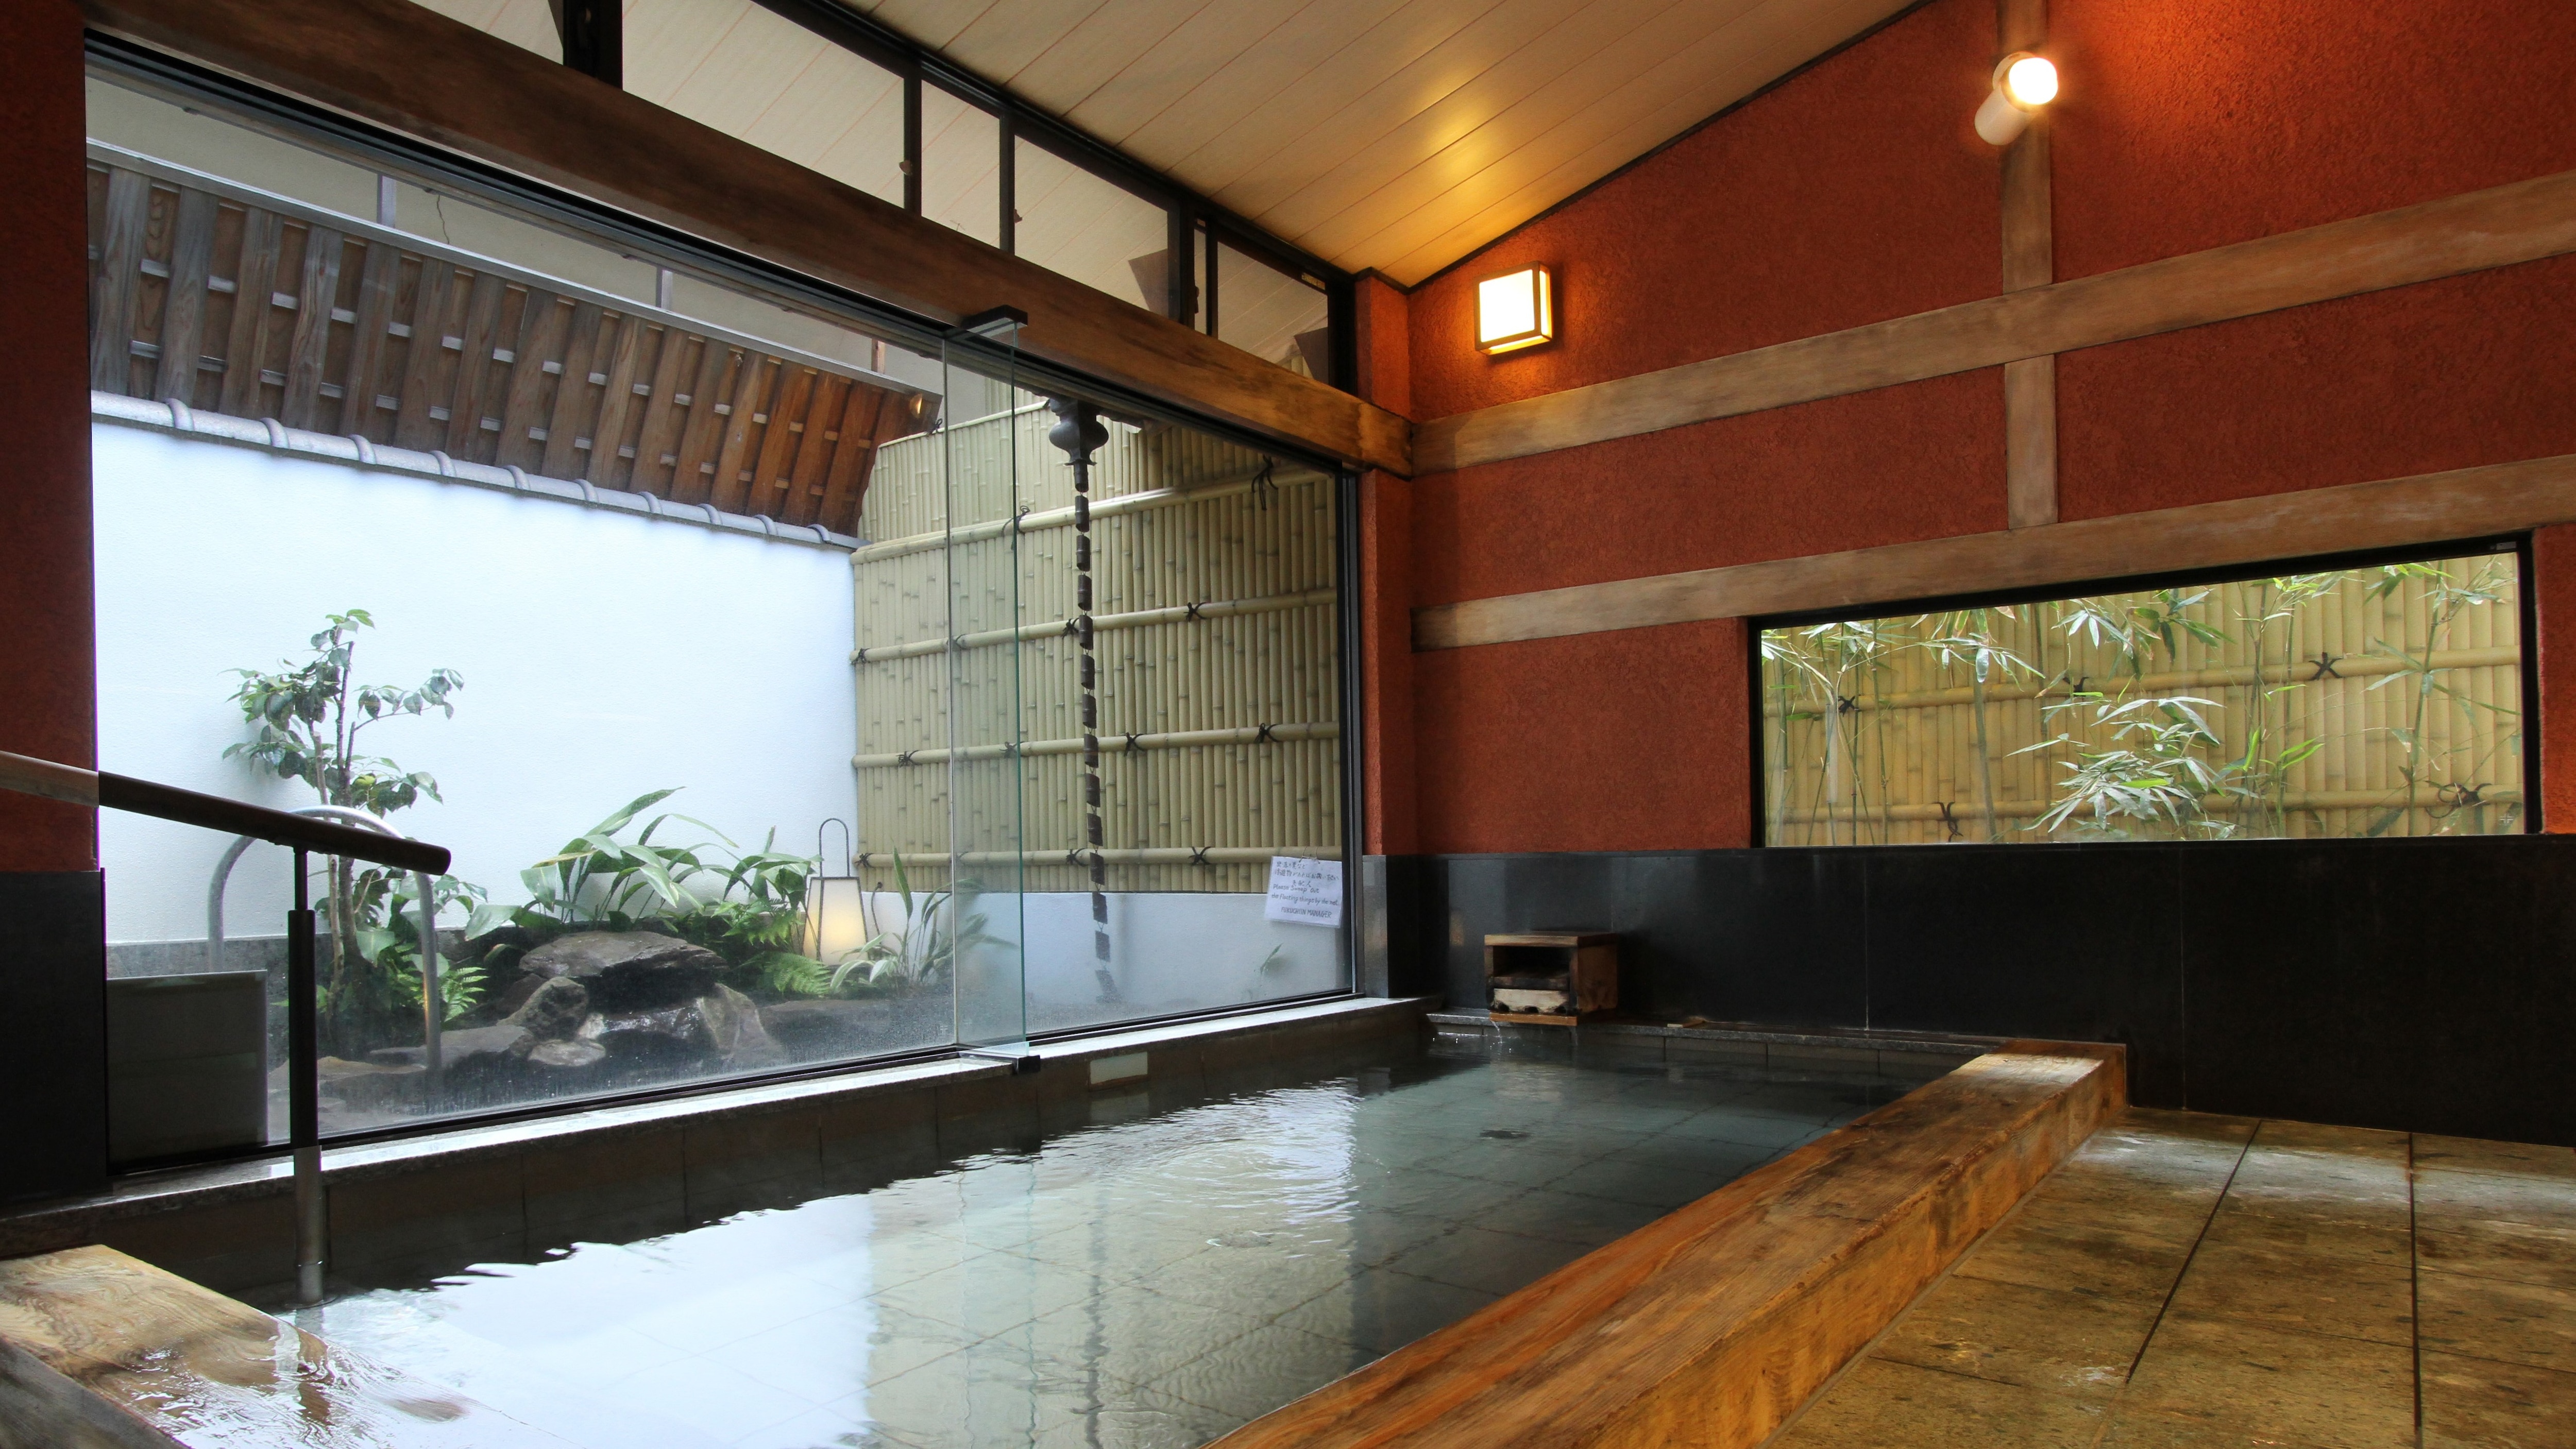 [Tenjo no Yu] 室内浴池是使用高野真希的芳香浴池。